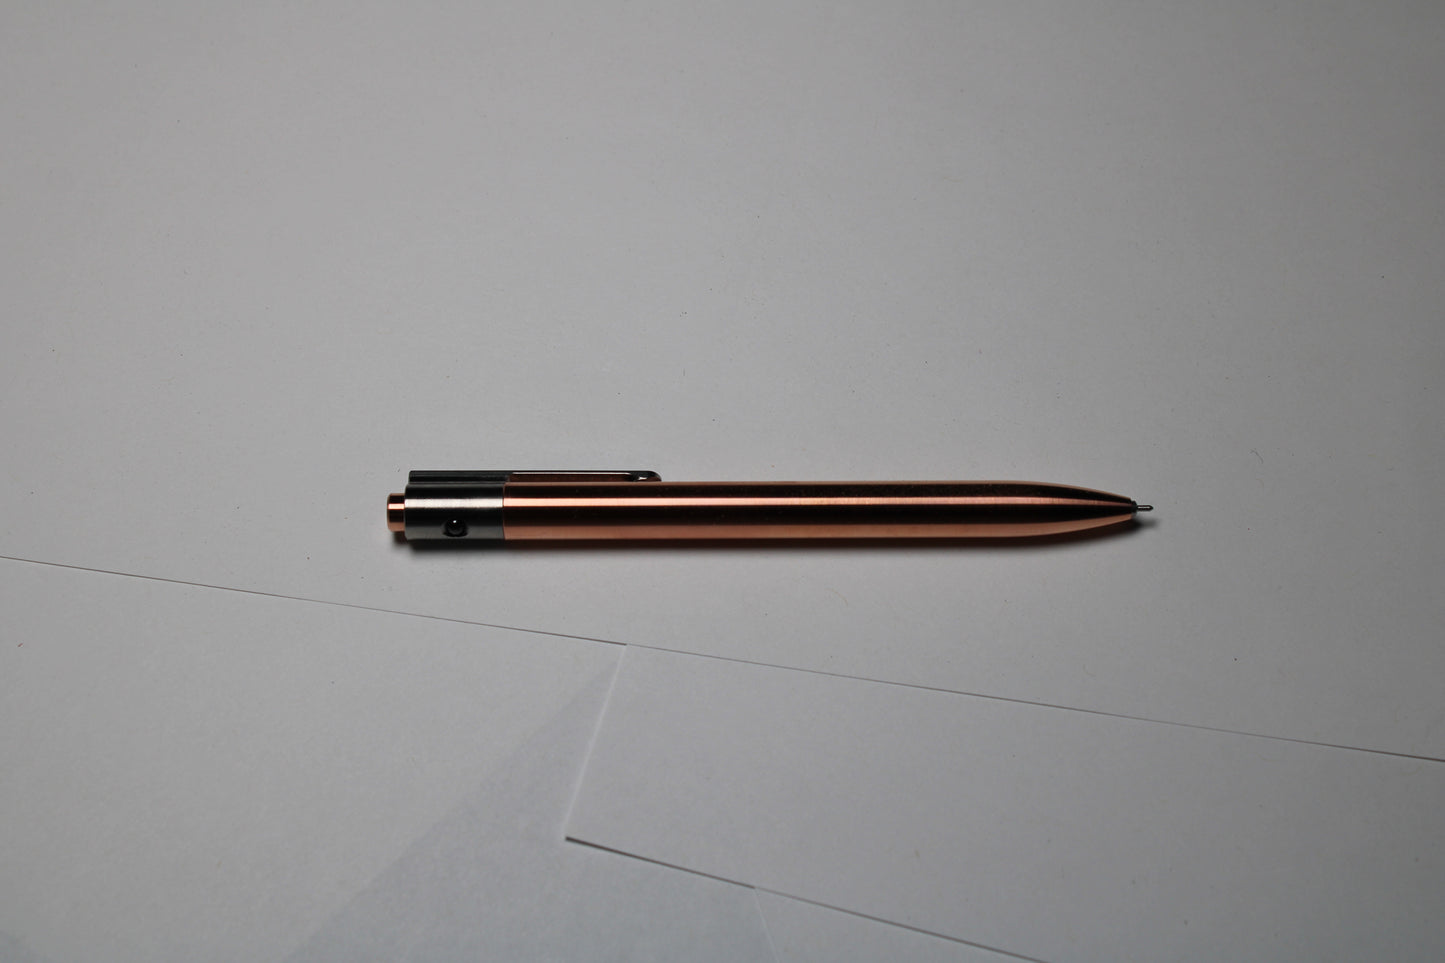 36 Click Pen - C110 Pure Copper Body - 6Al-4V Titanium Clip - Round Nose - Silicone Nitride Ball - OHTO Flash Dry Needle Point ISO G2 (Parker)